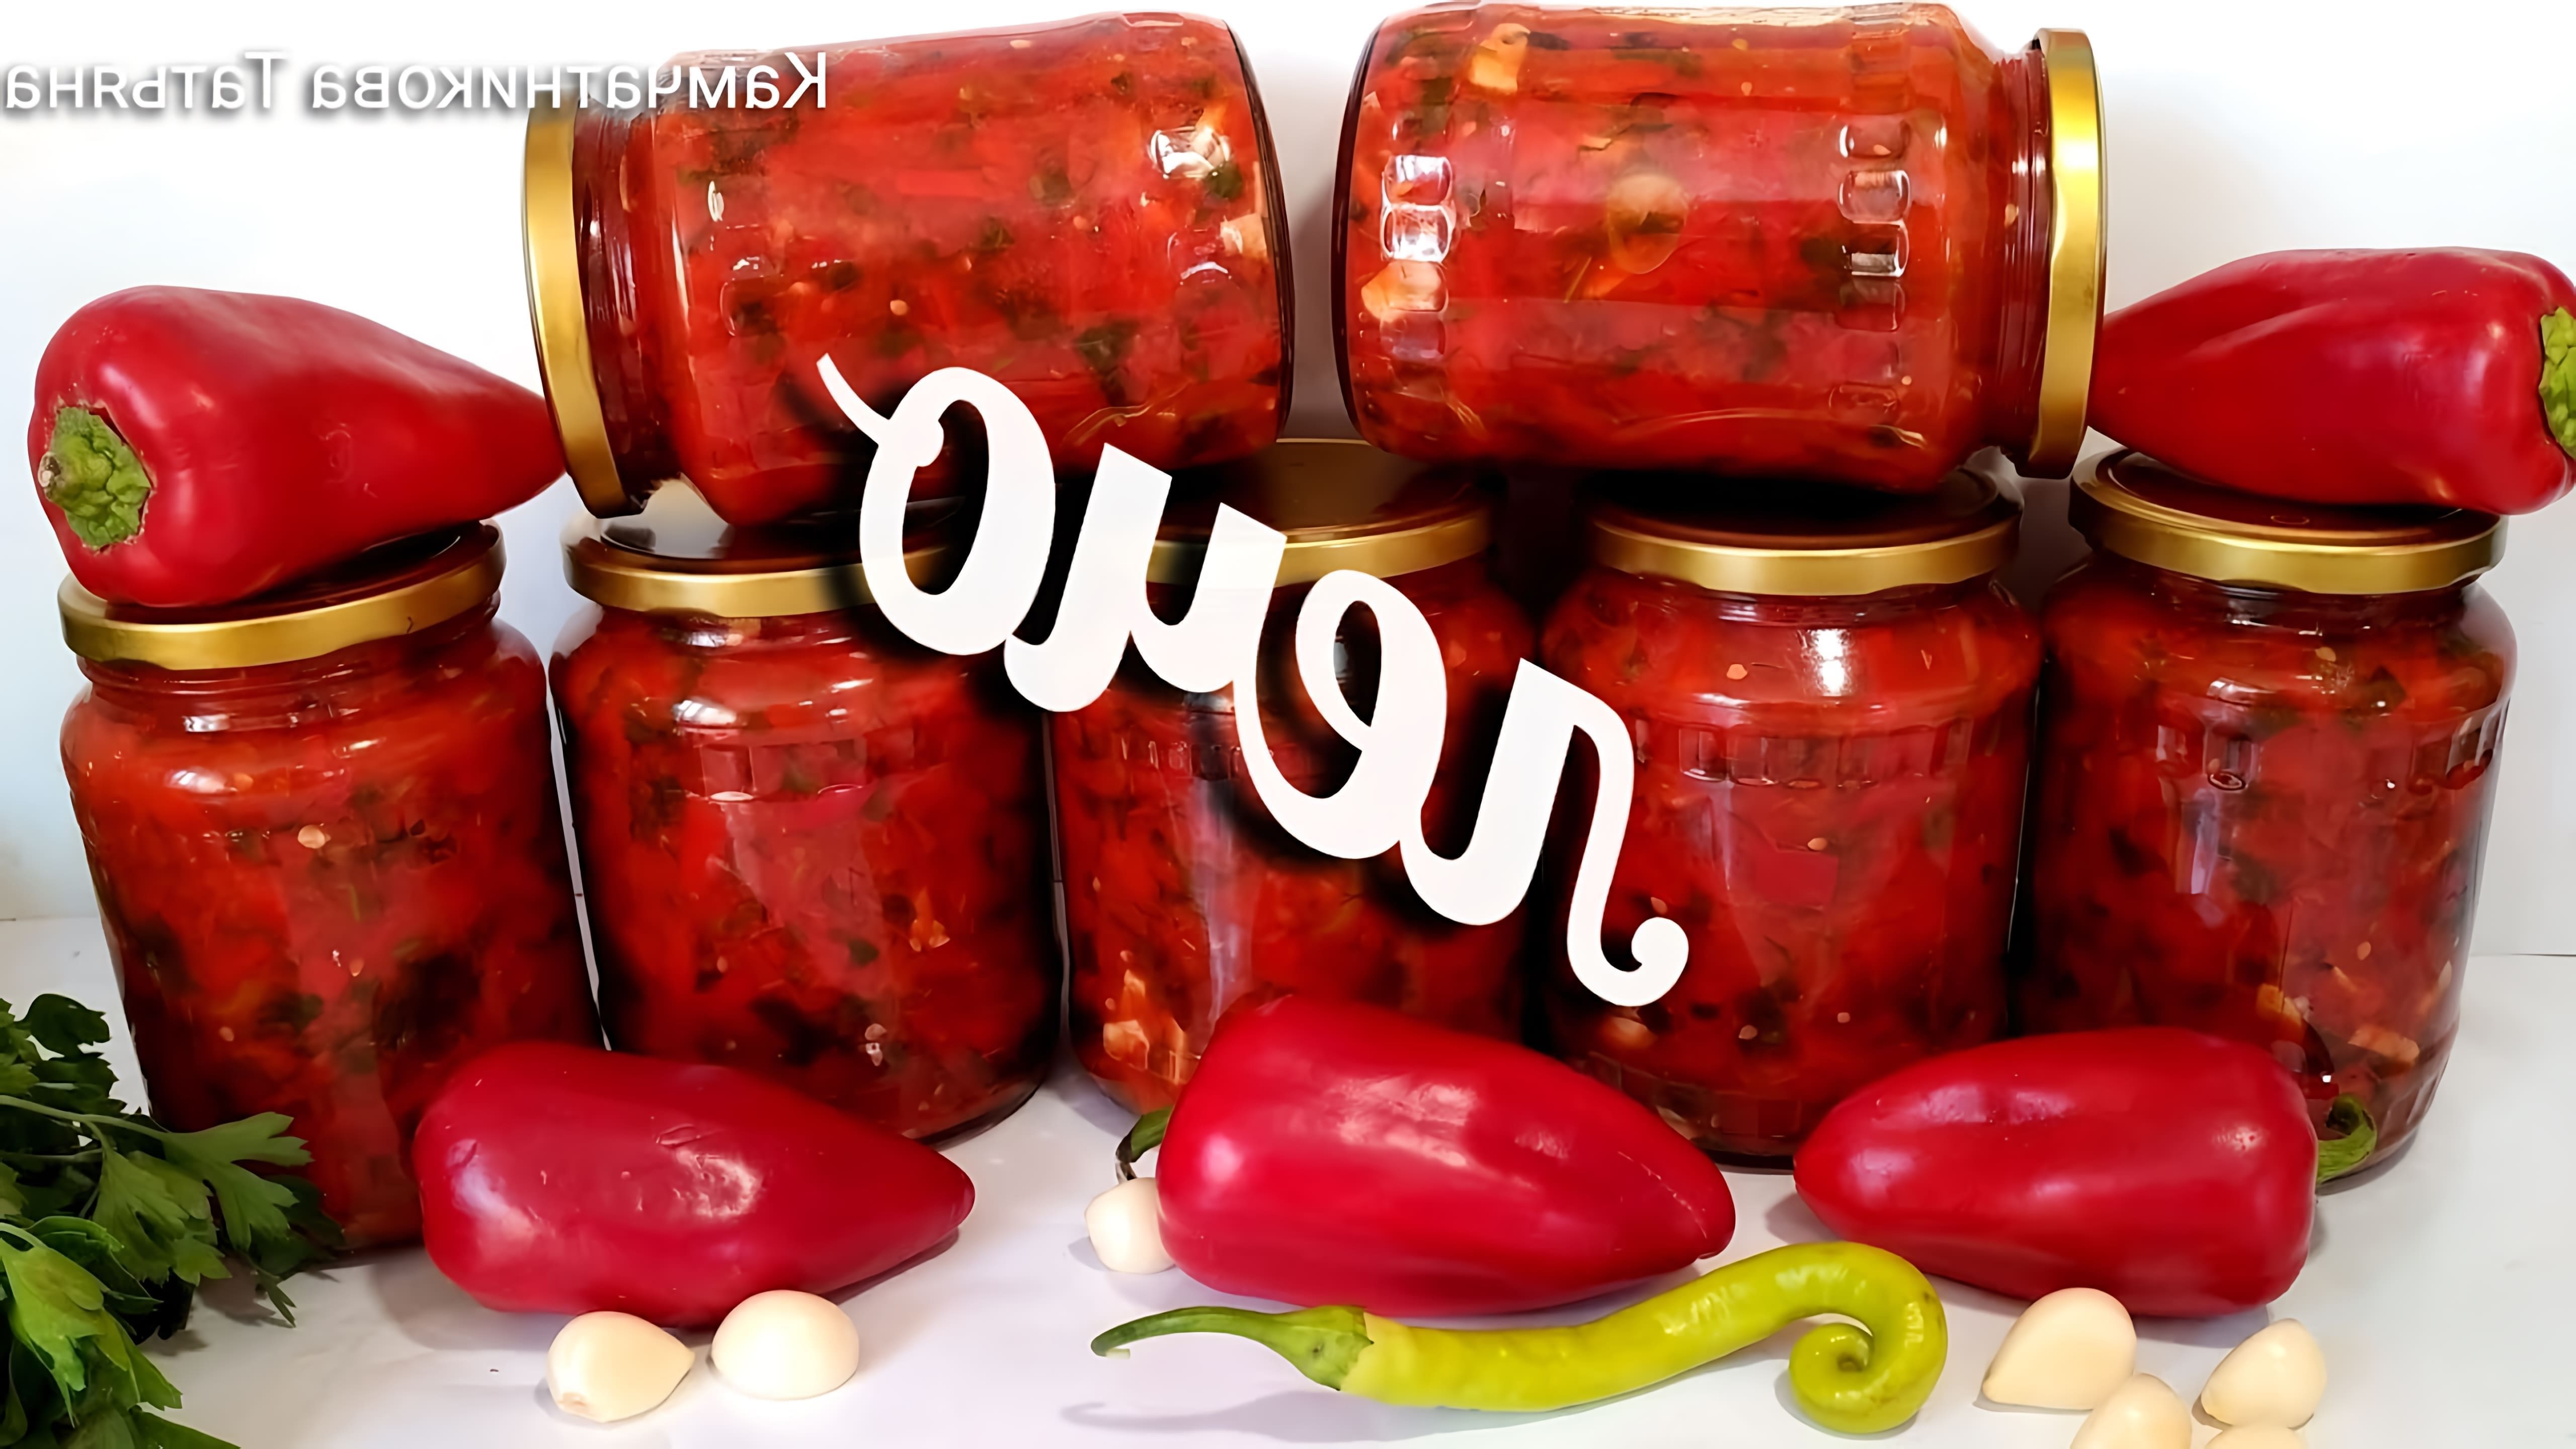 Видео как приготовить очень вкусный консервированный соус из перца и помидоров под названием "LEC"